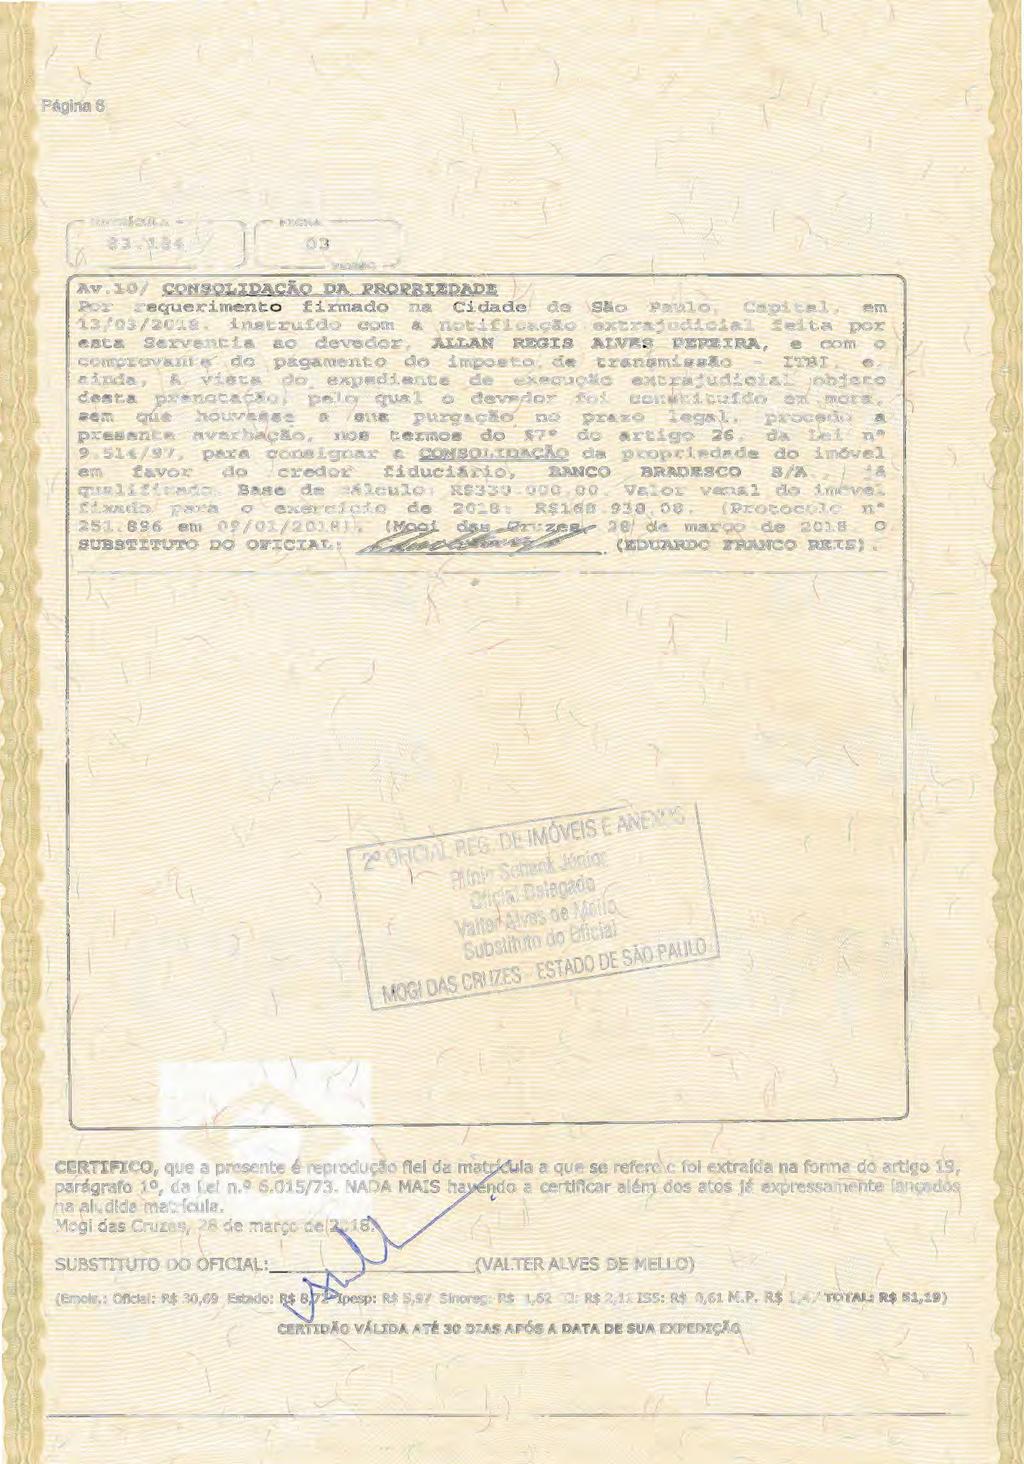 Página 6 c M&T fcul& 83.184 L ) Av.1.0/ CONSQL:IDACÃ.Qo DA PROI?.RIEDADE Por requerimento firmado na Cidade de São Paulo, Capital, em 13/03/2018, instru~do com a notificação extrajudicial.